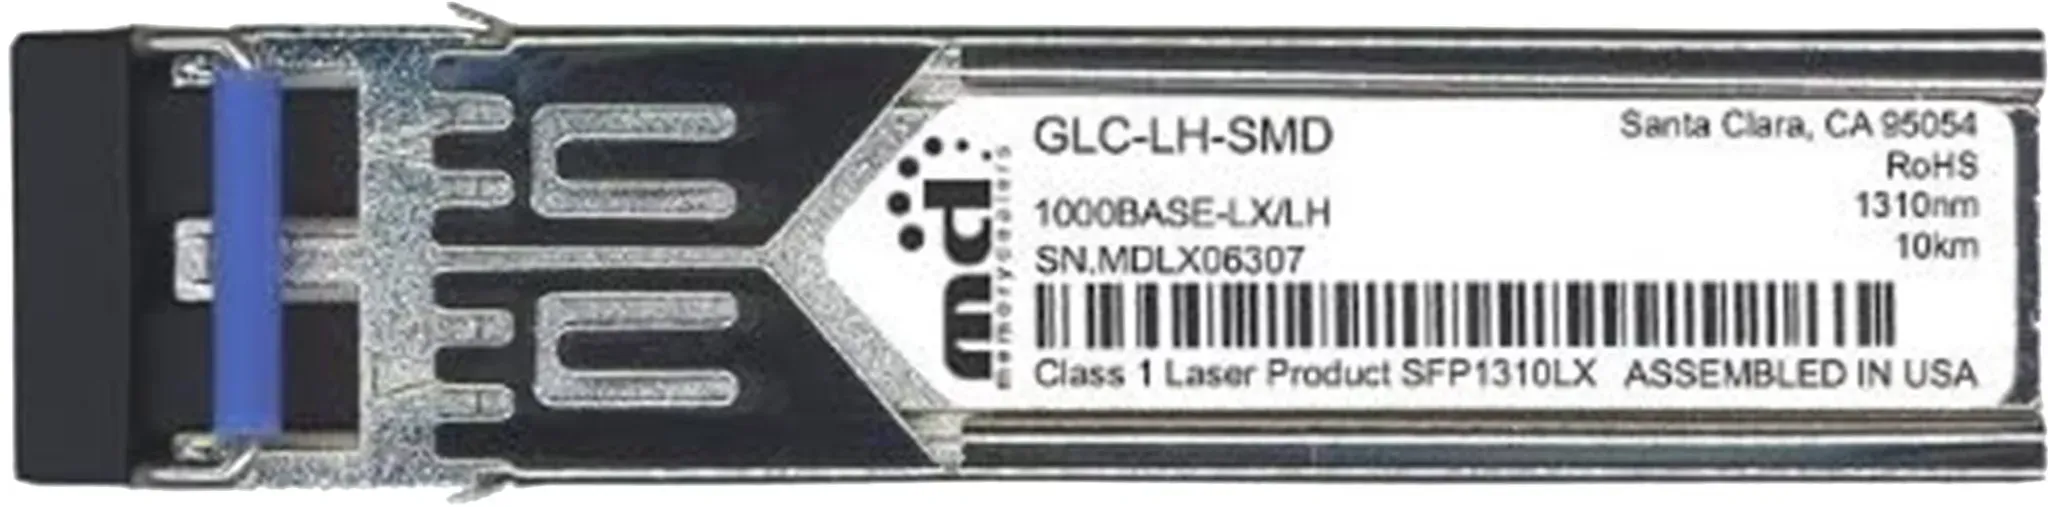 GLC-LH-SMD neu